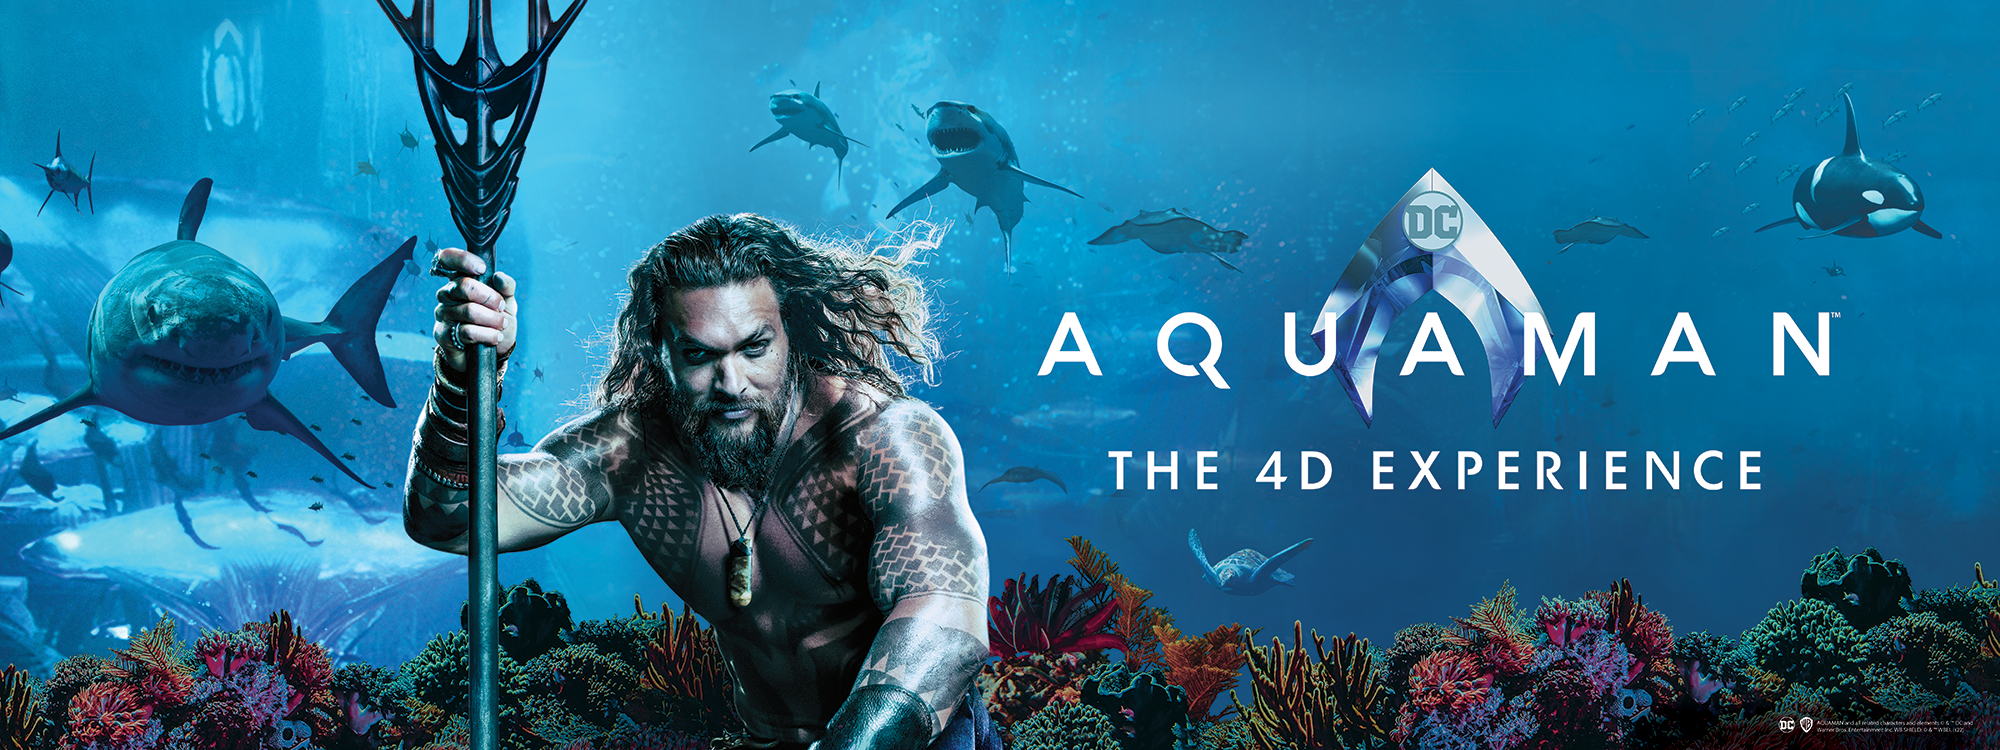 Aquaman 4D Movie 